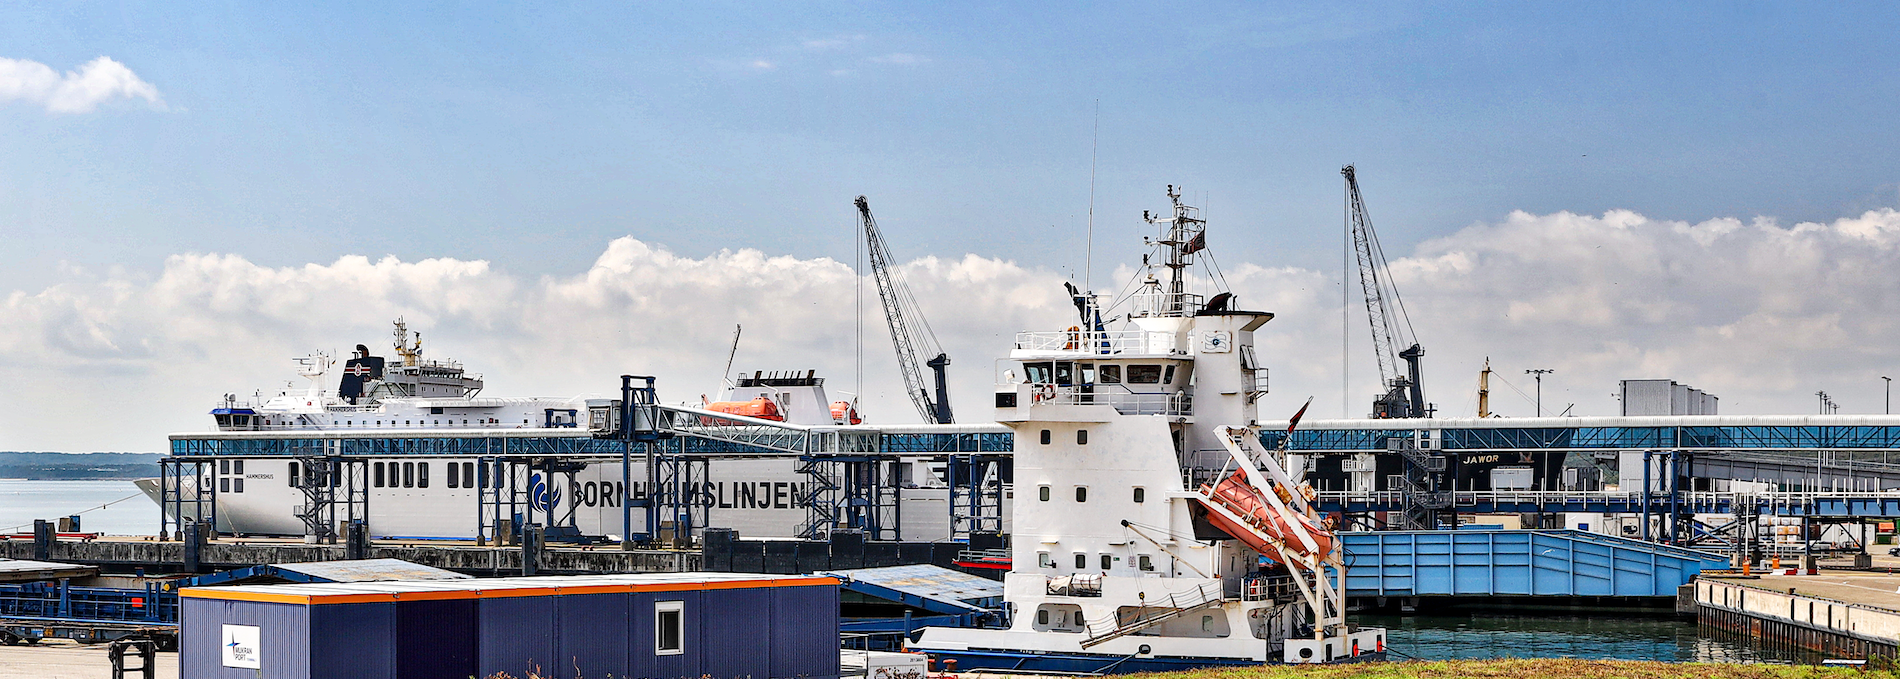 ferry port-sassnitz_1, © TMV/Gohlke